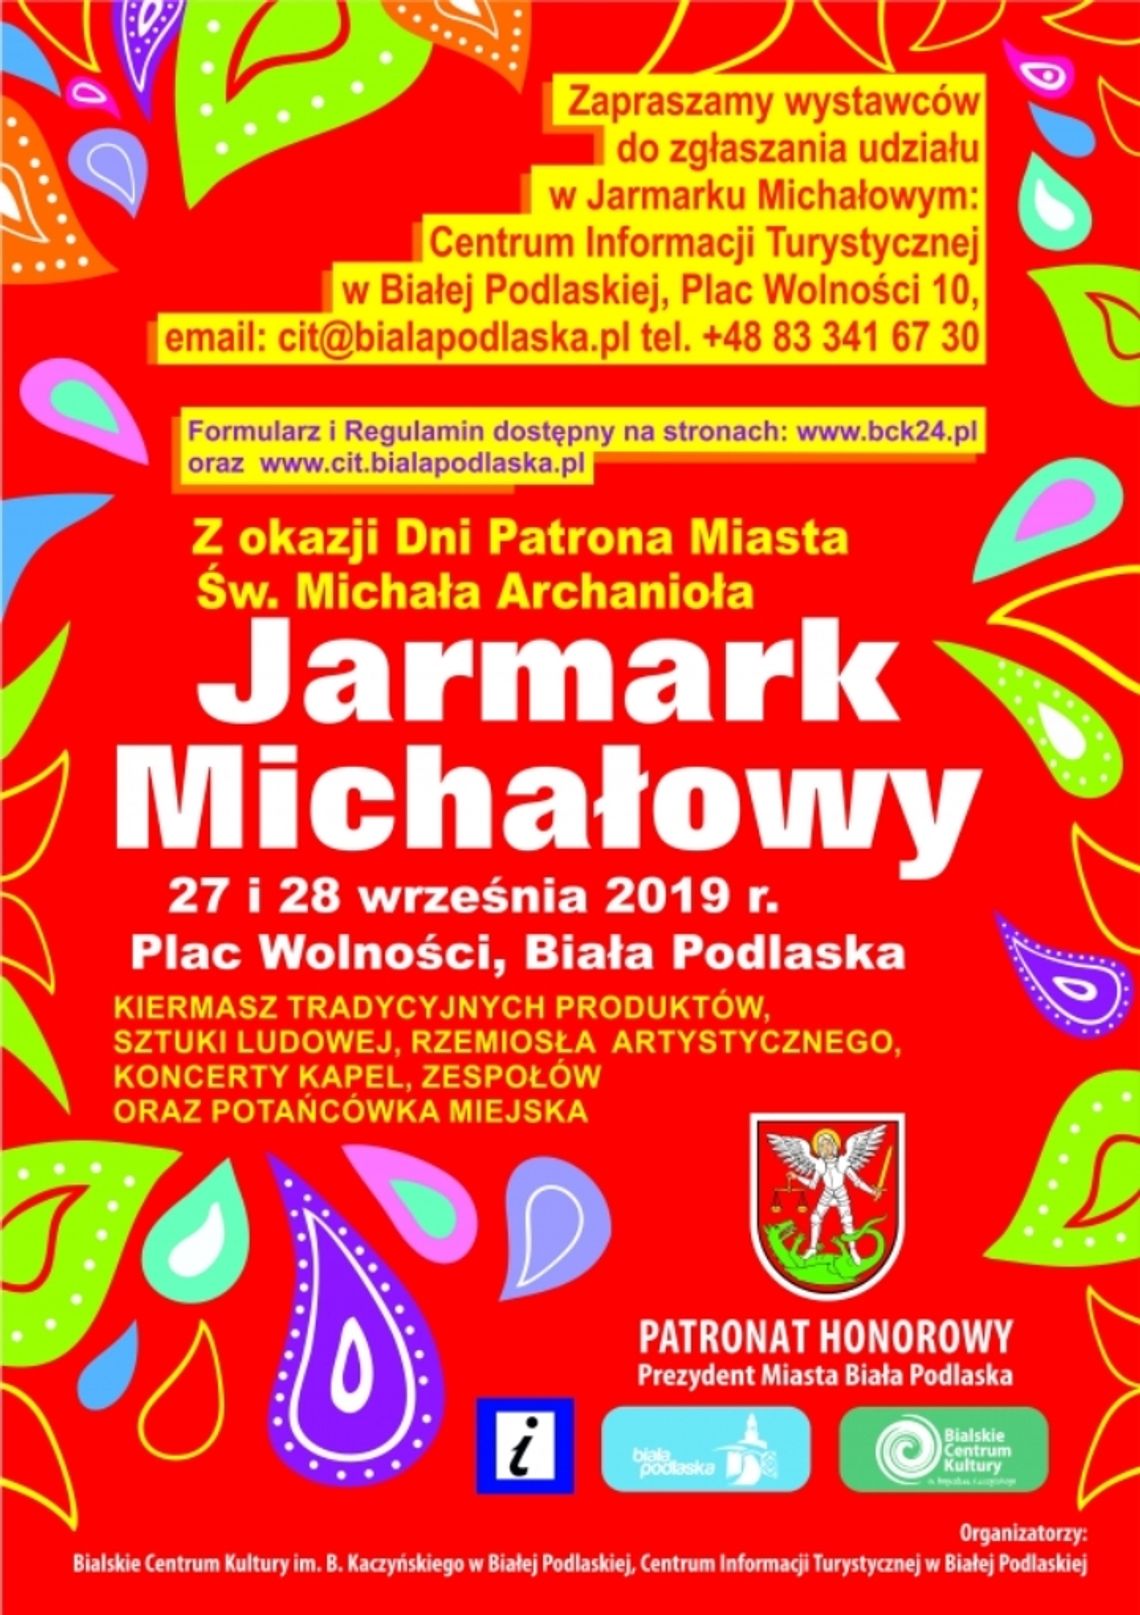 Jarmark Michałowy